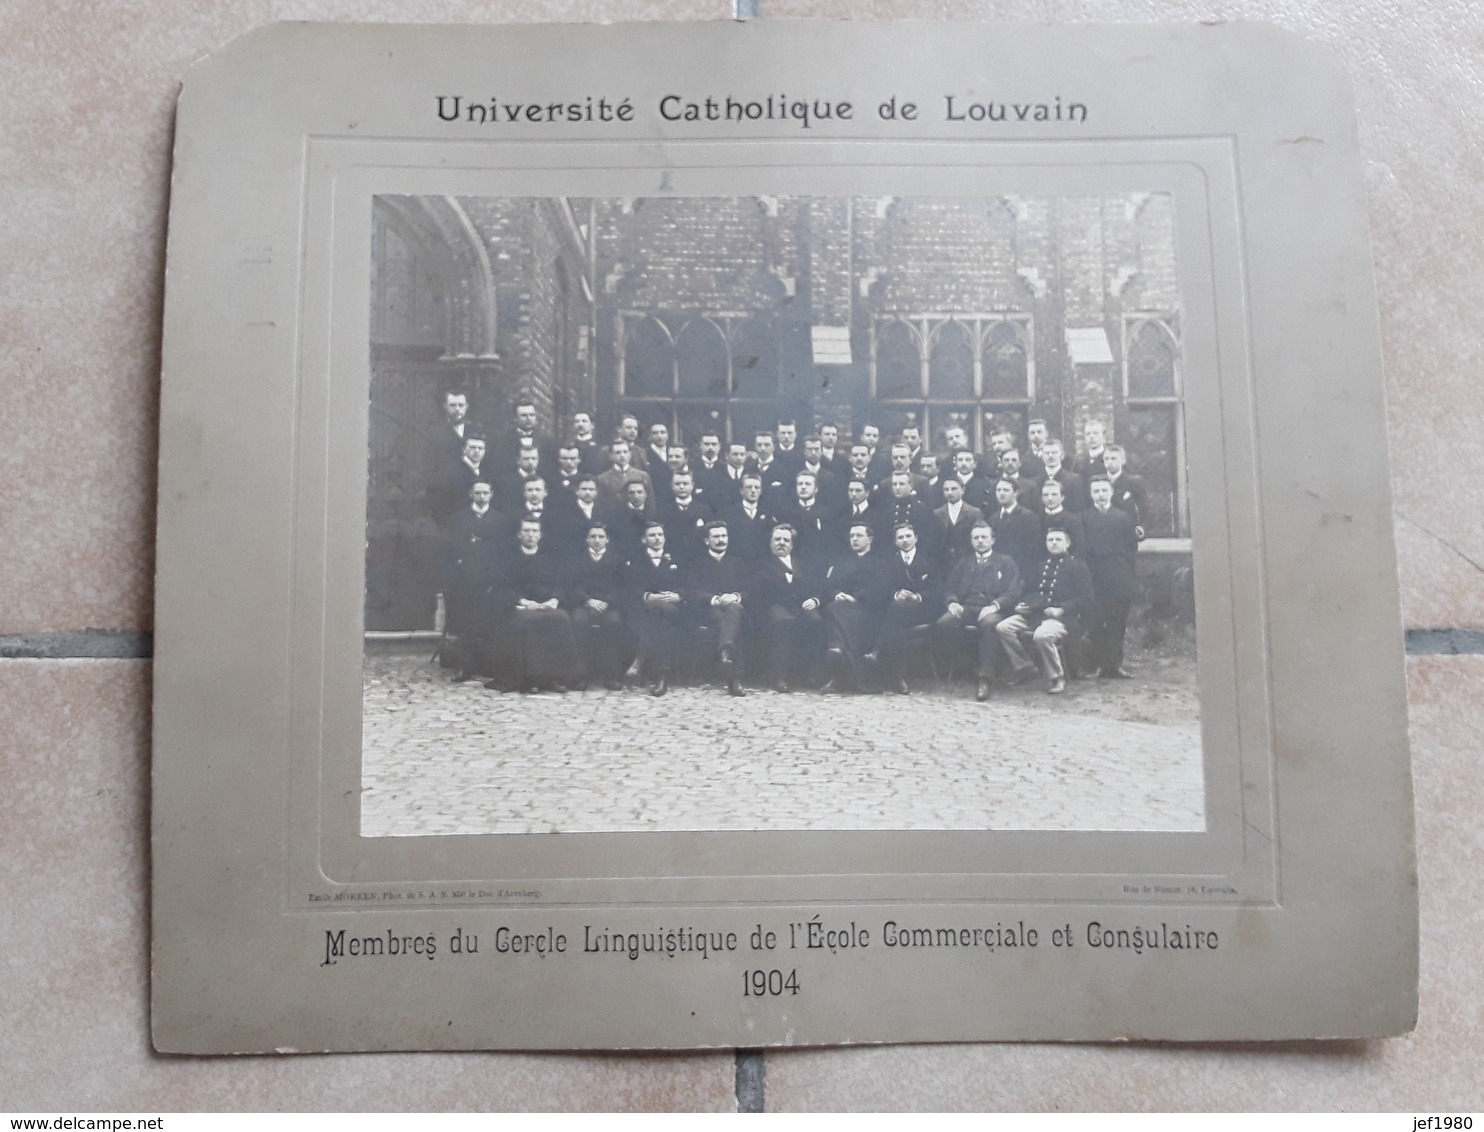 GRANDE GROTE ORGINELE FOTO AFMETINGEN 42 CM OP 36 CM UNIVERSITE CATHOLIQUE DE LOUVAIN LEUVEN JAAR 1904 - Non Classés